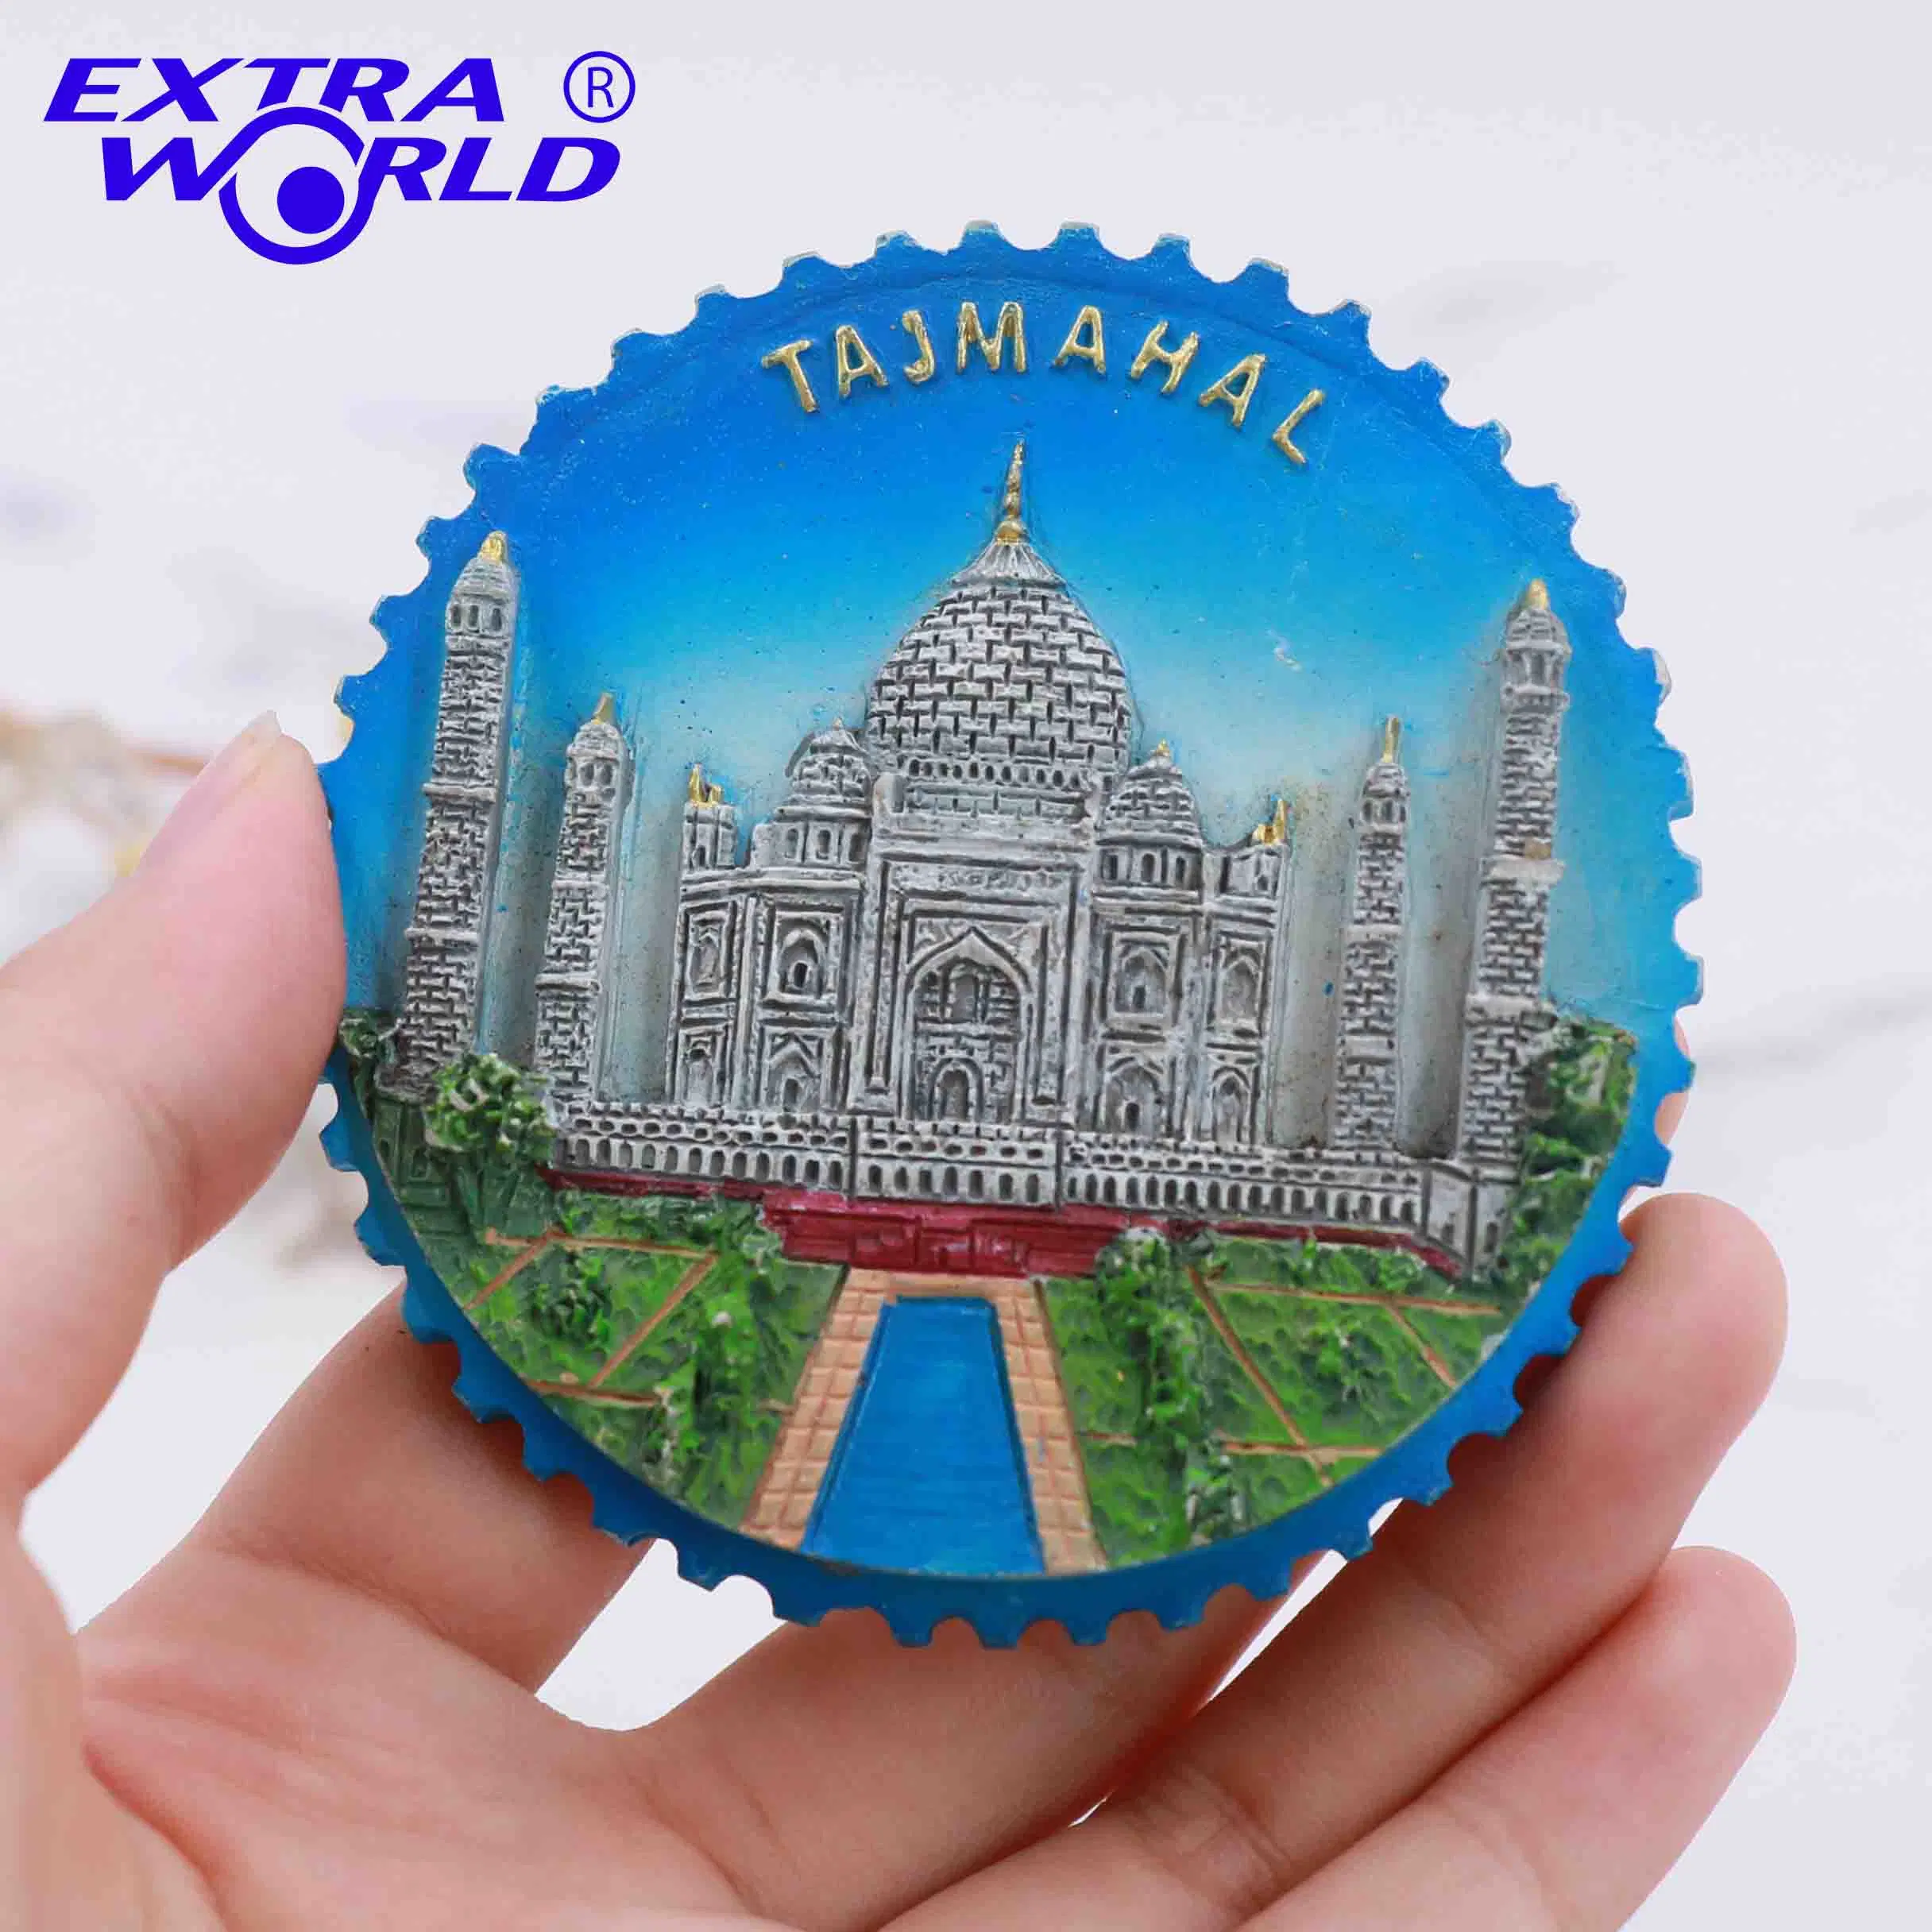 Recuerdo turístico de la India Taj Mahal, imán de nevera hecho a mano de resina personalizado para decoración del hogar y manualidades